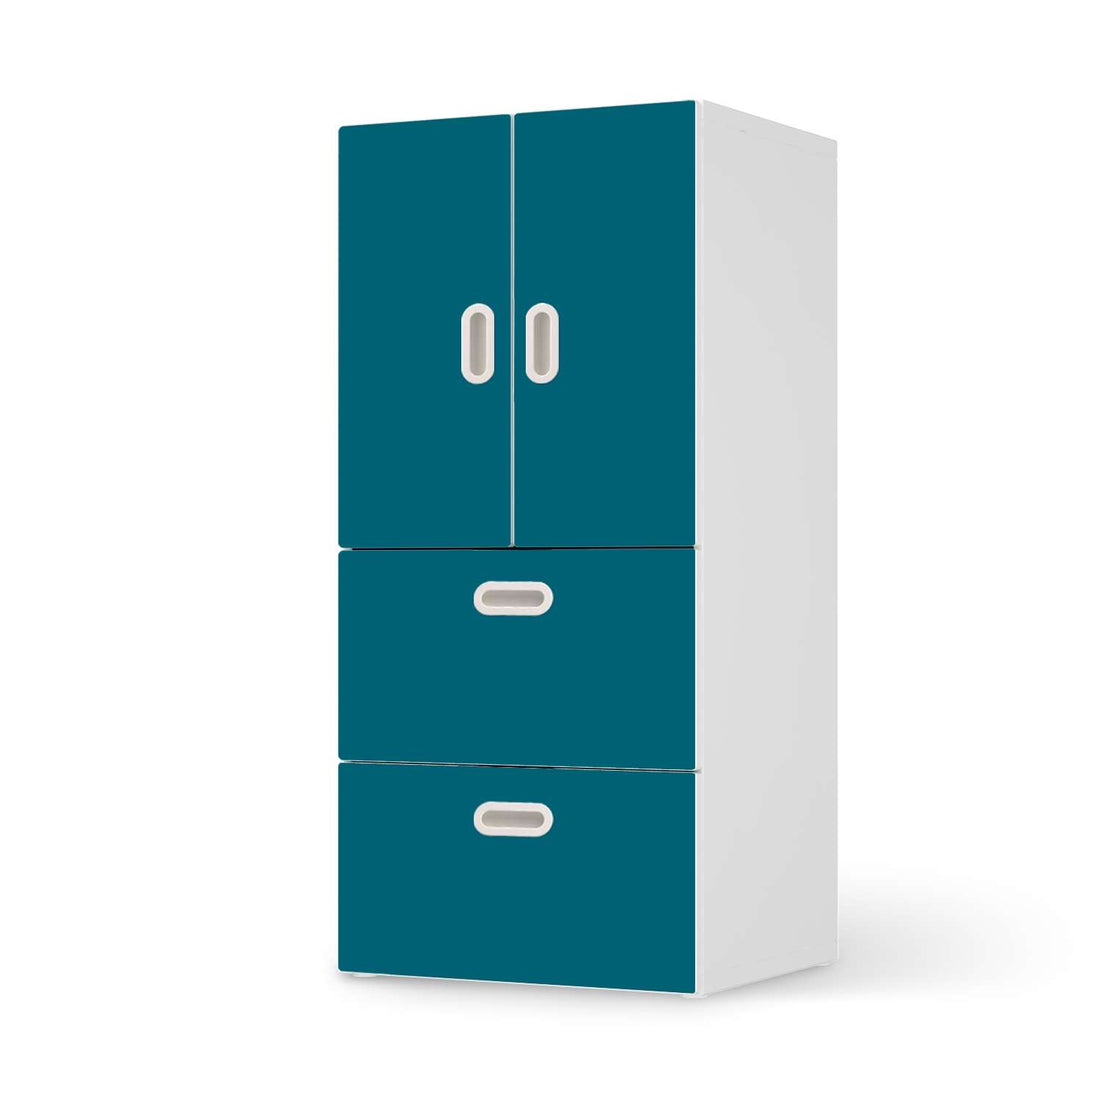 Möbelfolie Türkisgrün Dark - IKEA Stuva / Fritids kombiniert - 2 Schubladen und 2 kleine Türen  - weiss